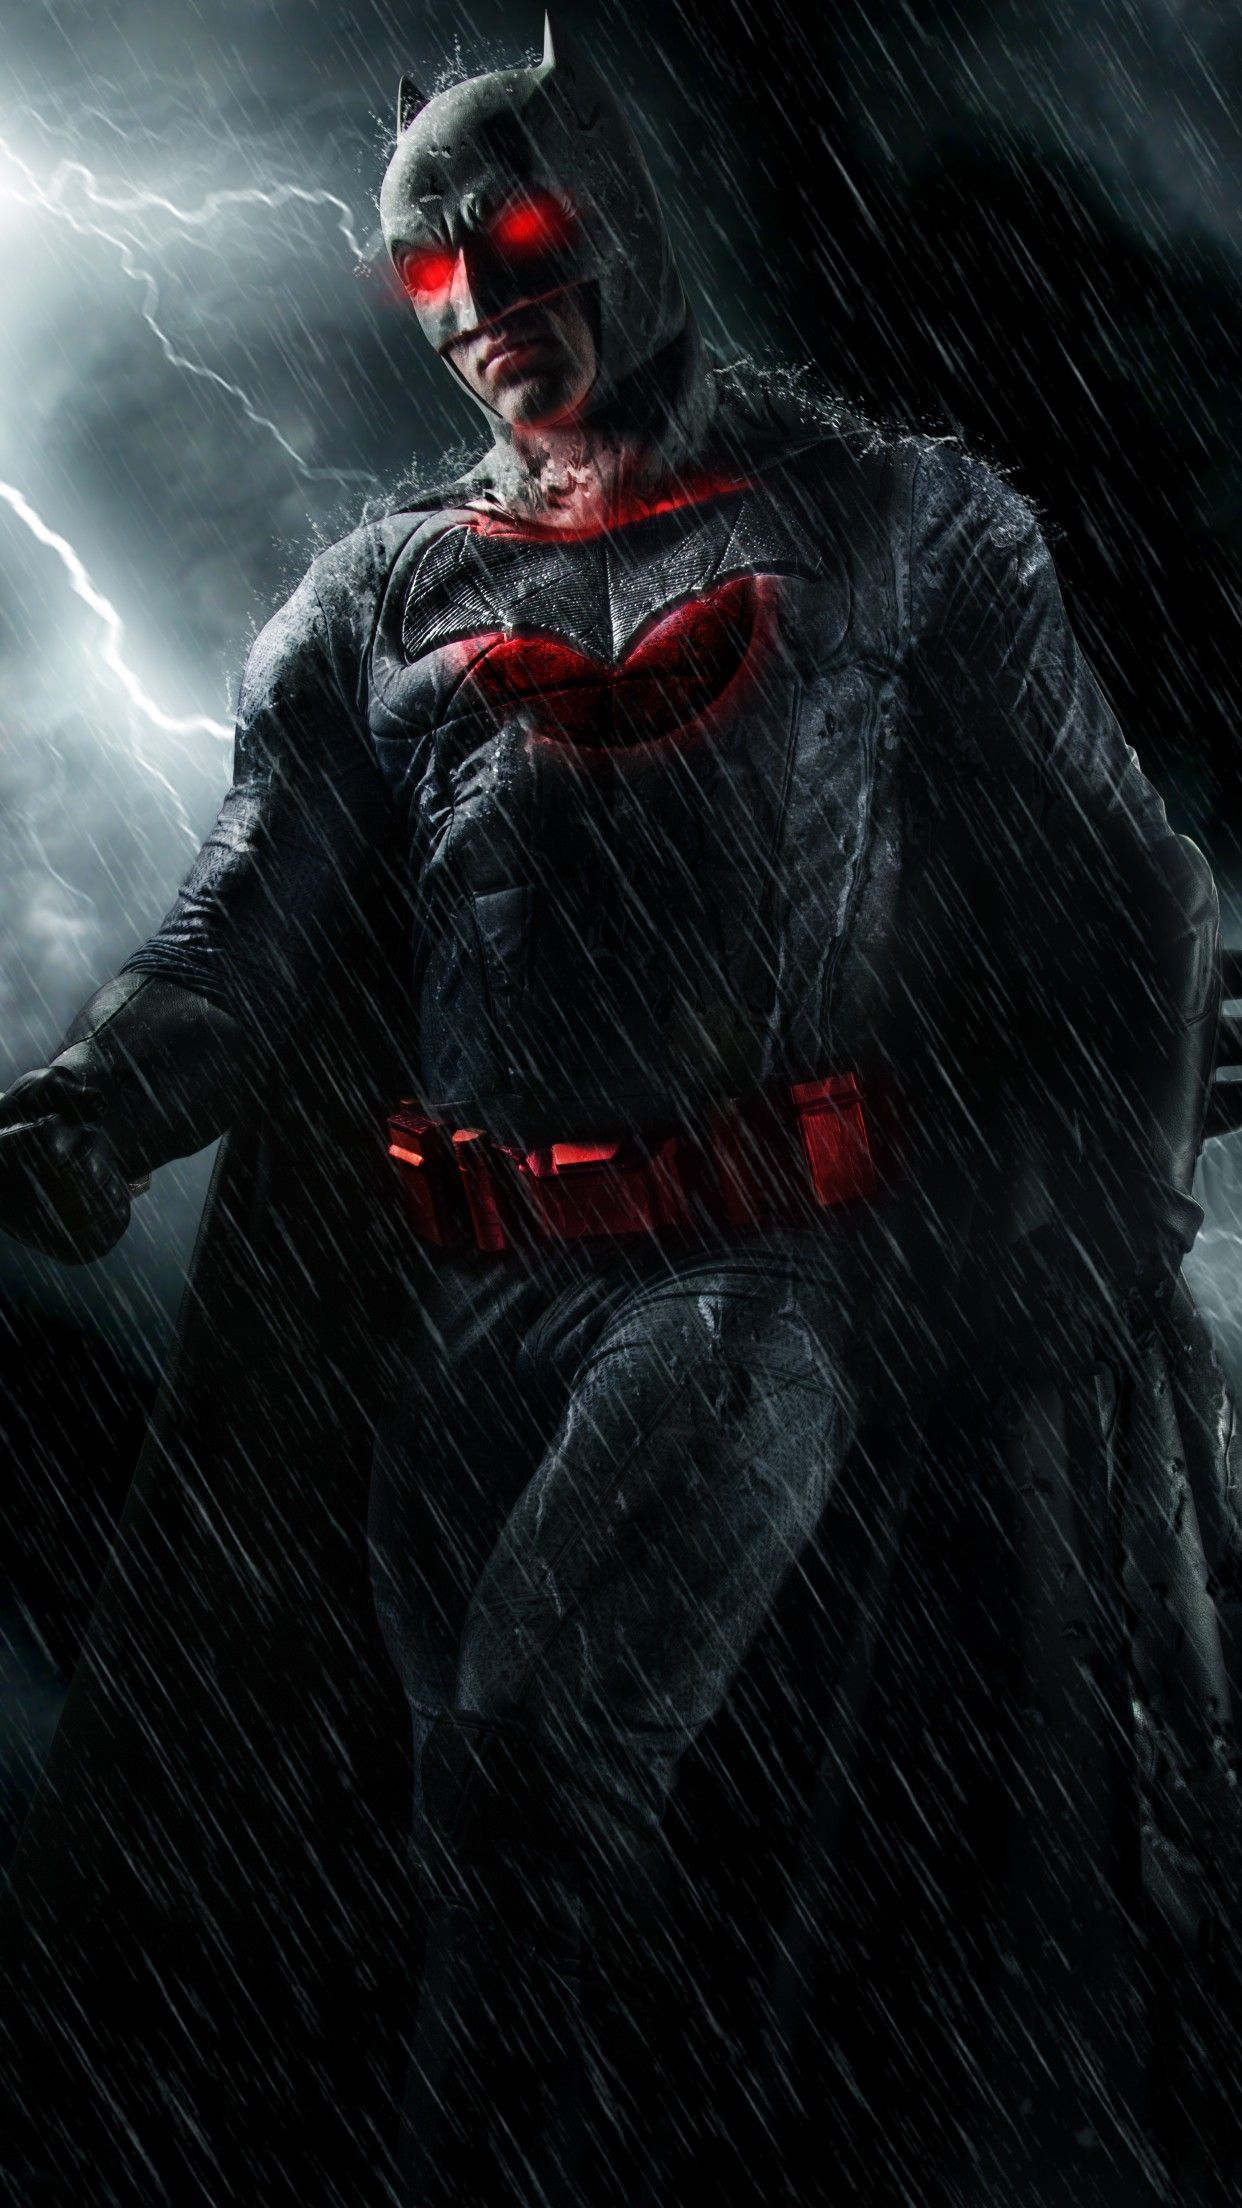 Batman 4K Wallpaper, DC Superheroes, DC Comics, Dark, Cosplay, Graphics CGI